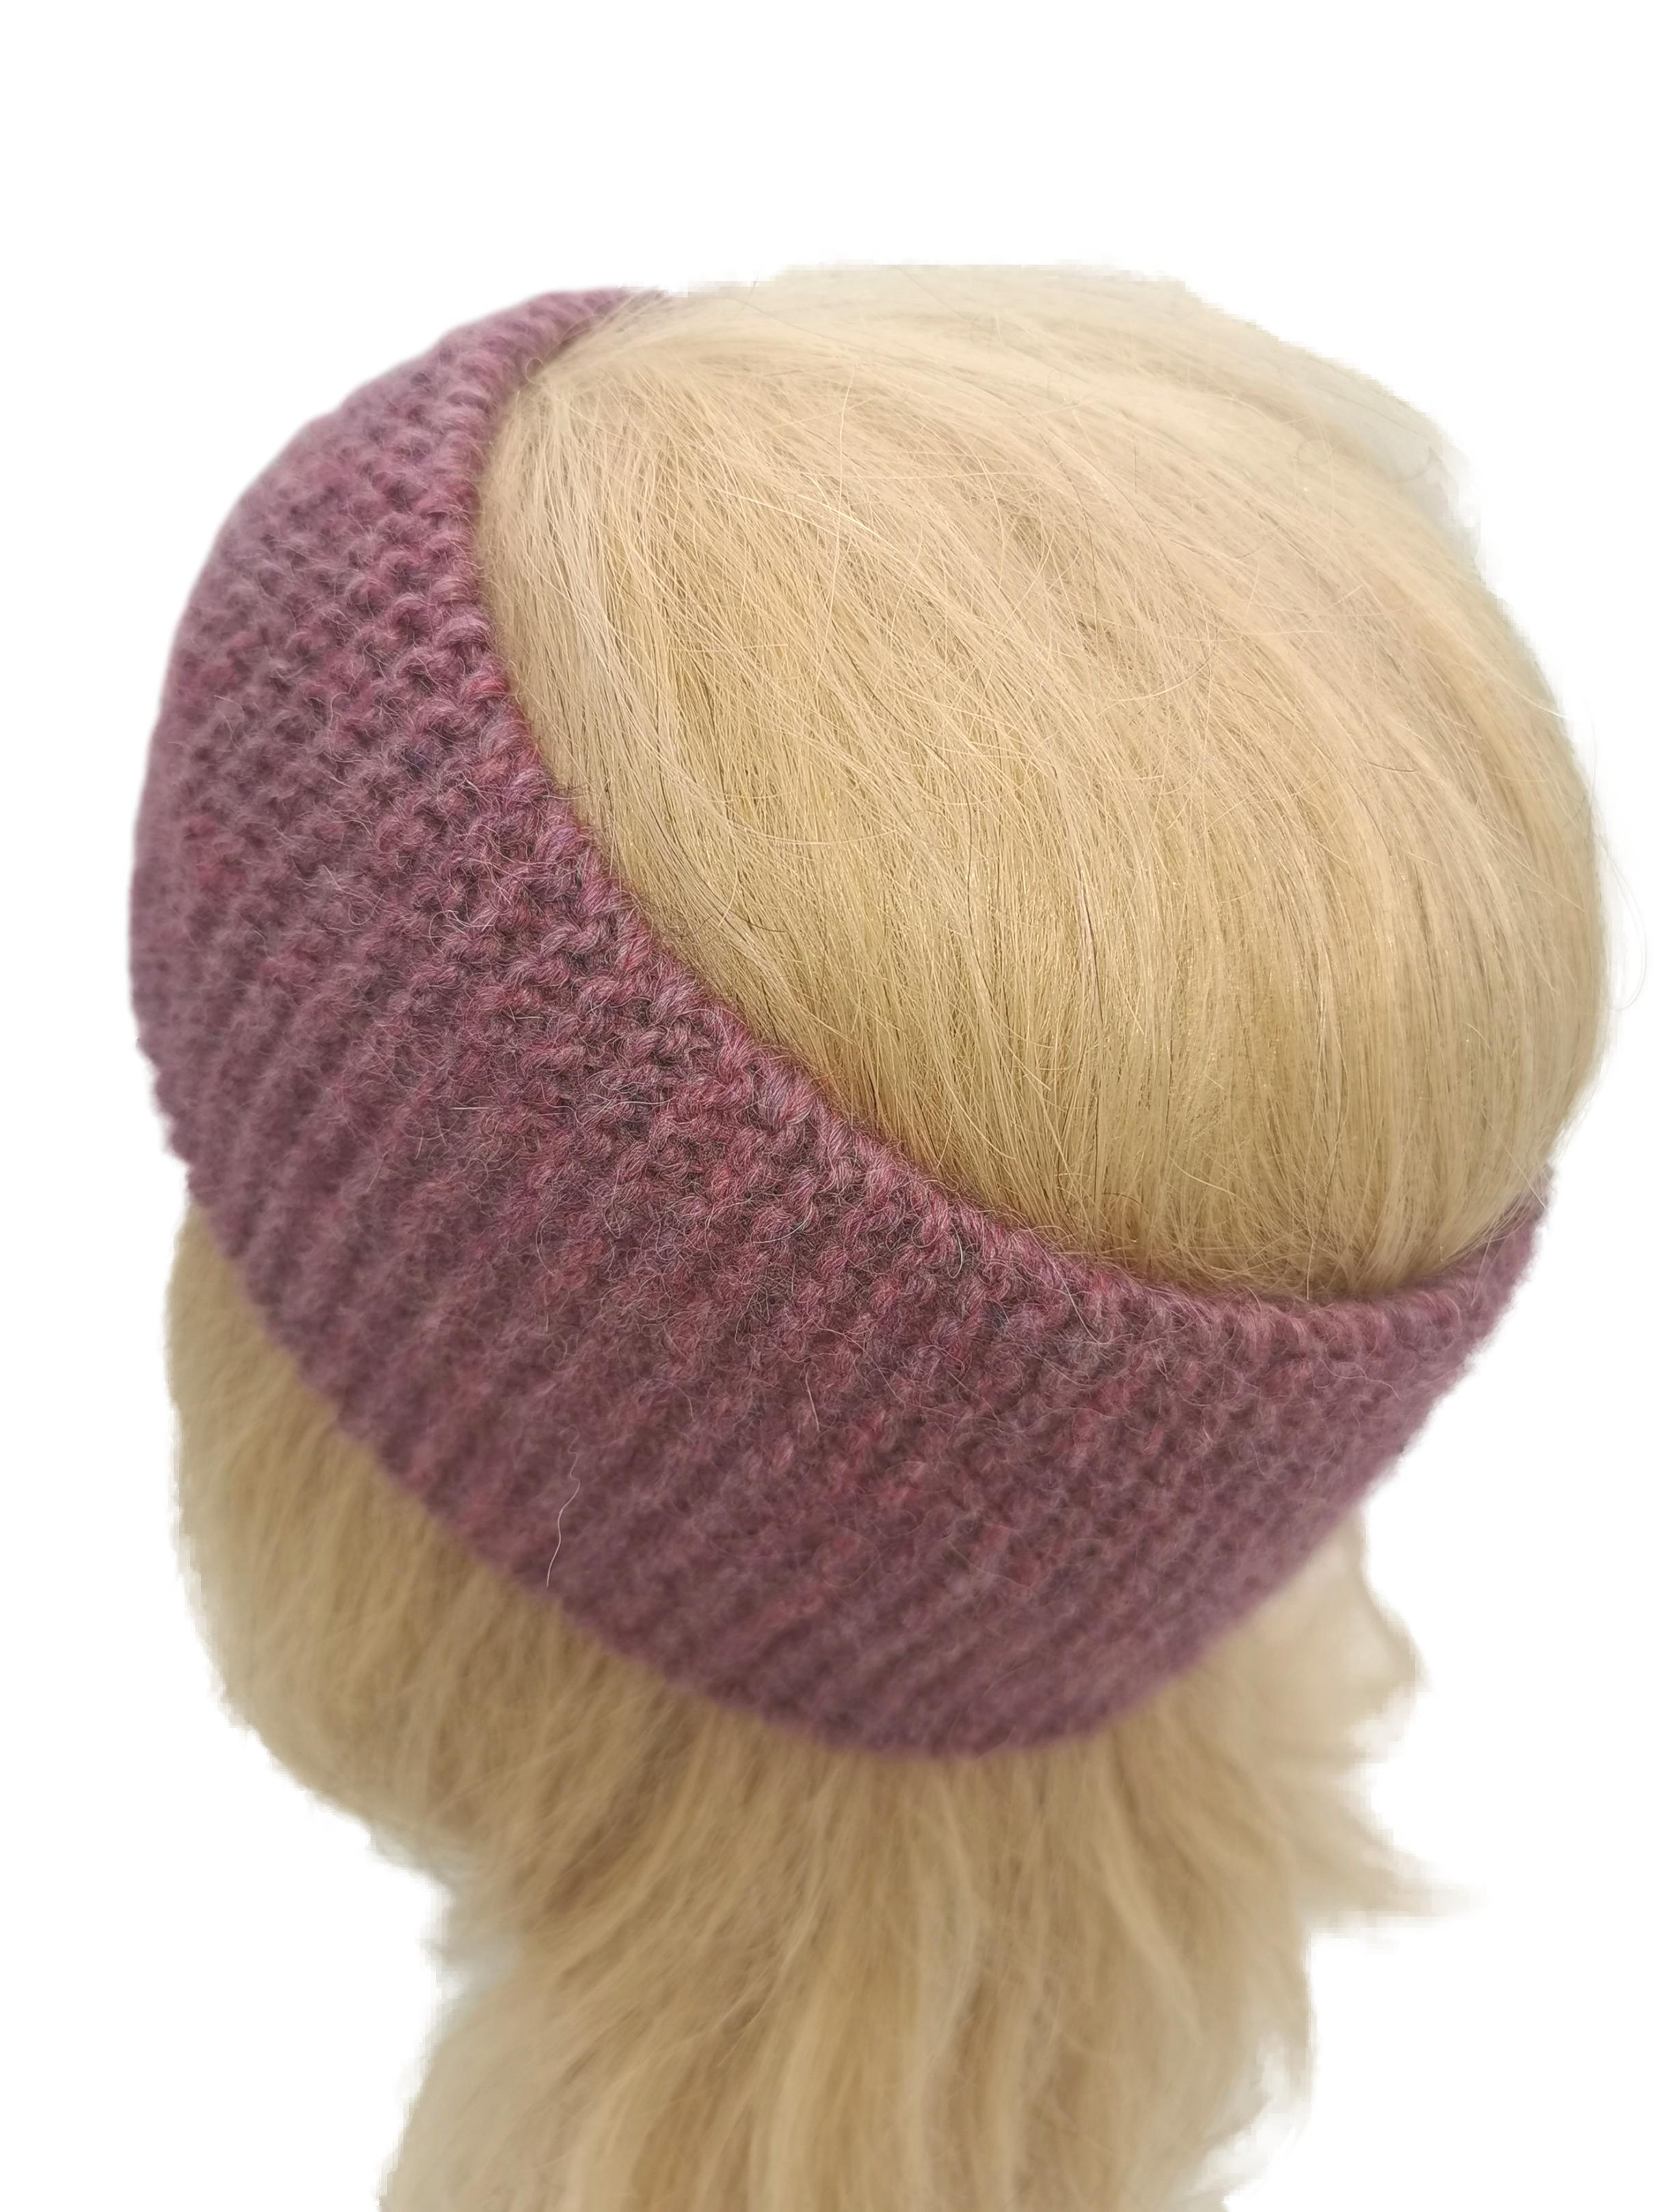 Schlicht gestricktes Stirnband, Haarband für Mädchen Teens u. Damen aus feinster Alpakawolle in vielen verschiedenen Farben